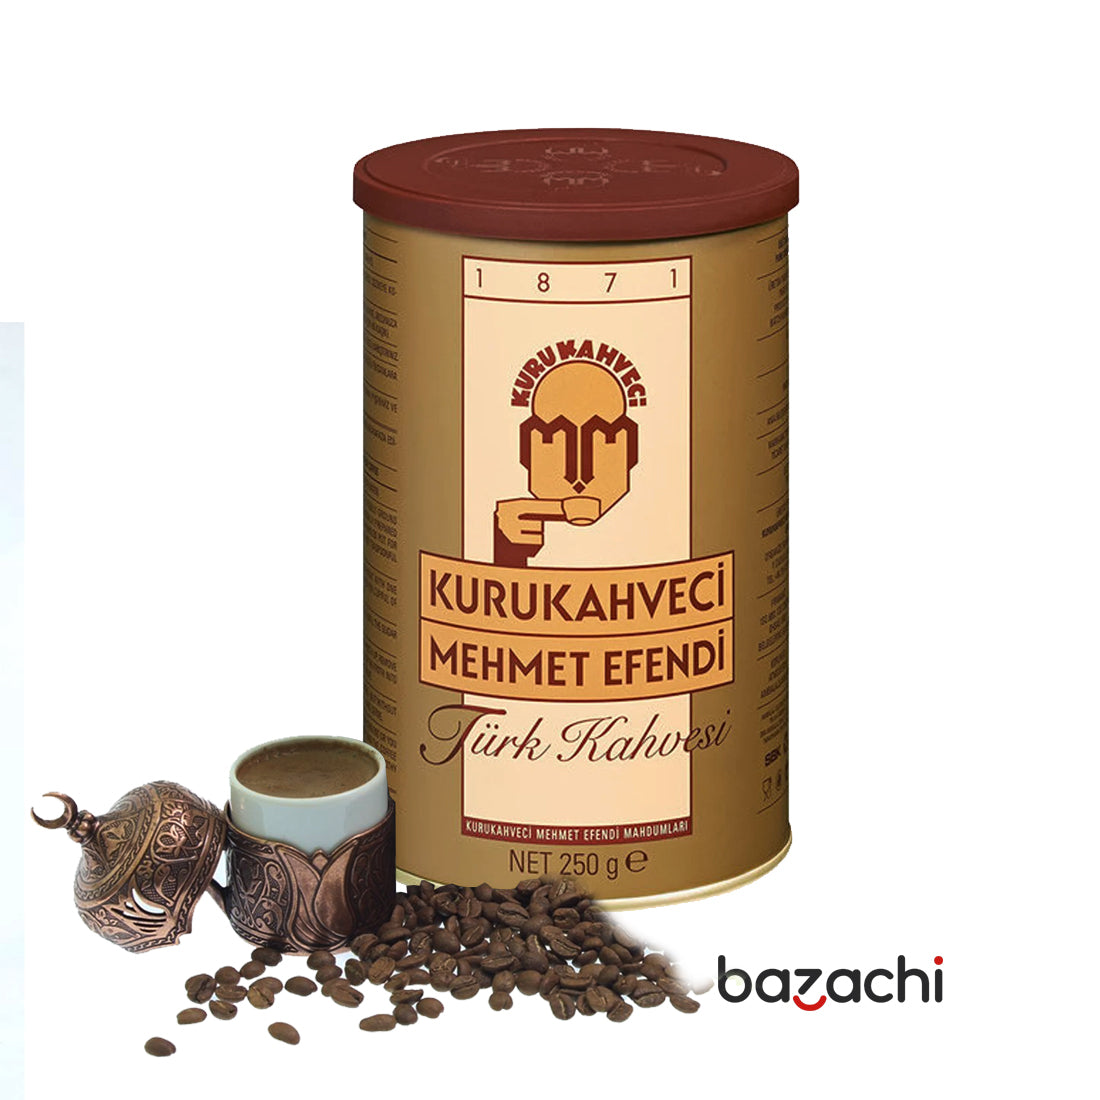 Kuru Kahveci Mehmet Efendi Original Turkish Coffee 250g